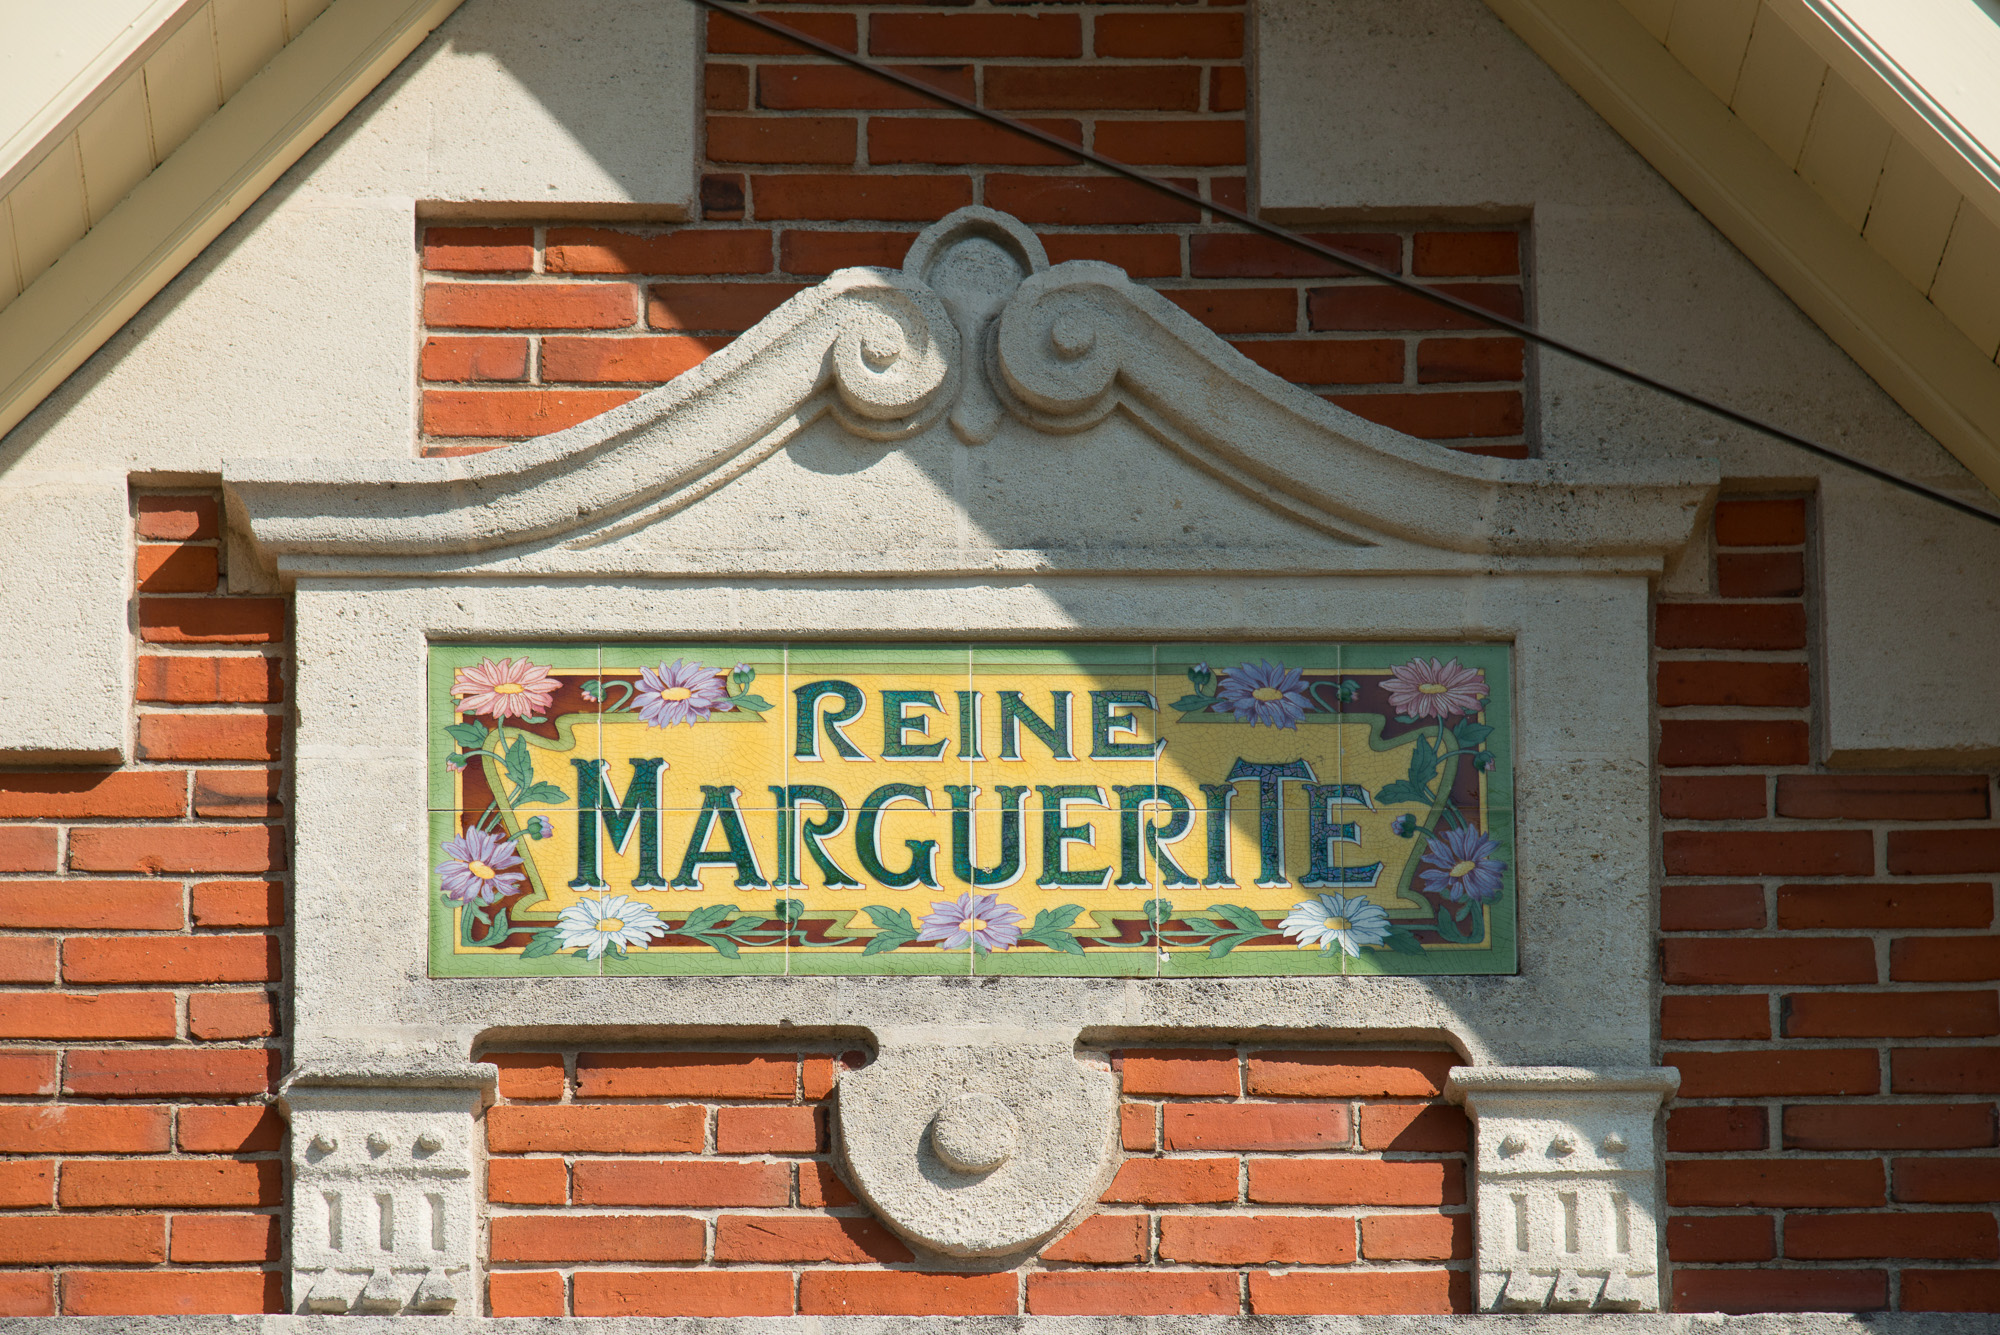 "Reine Marguerite"